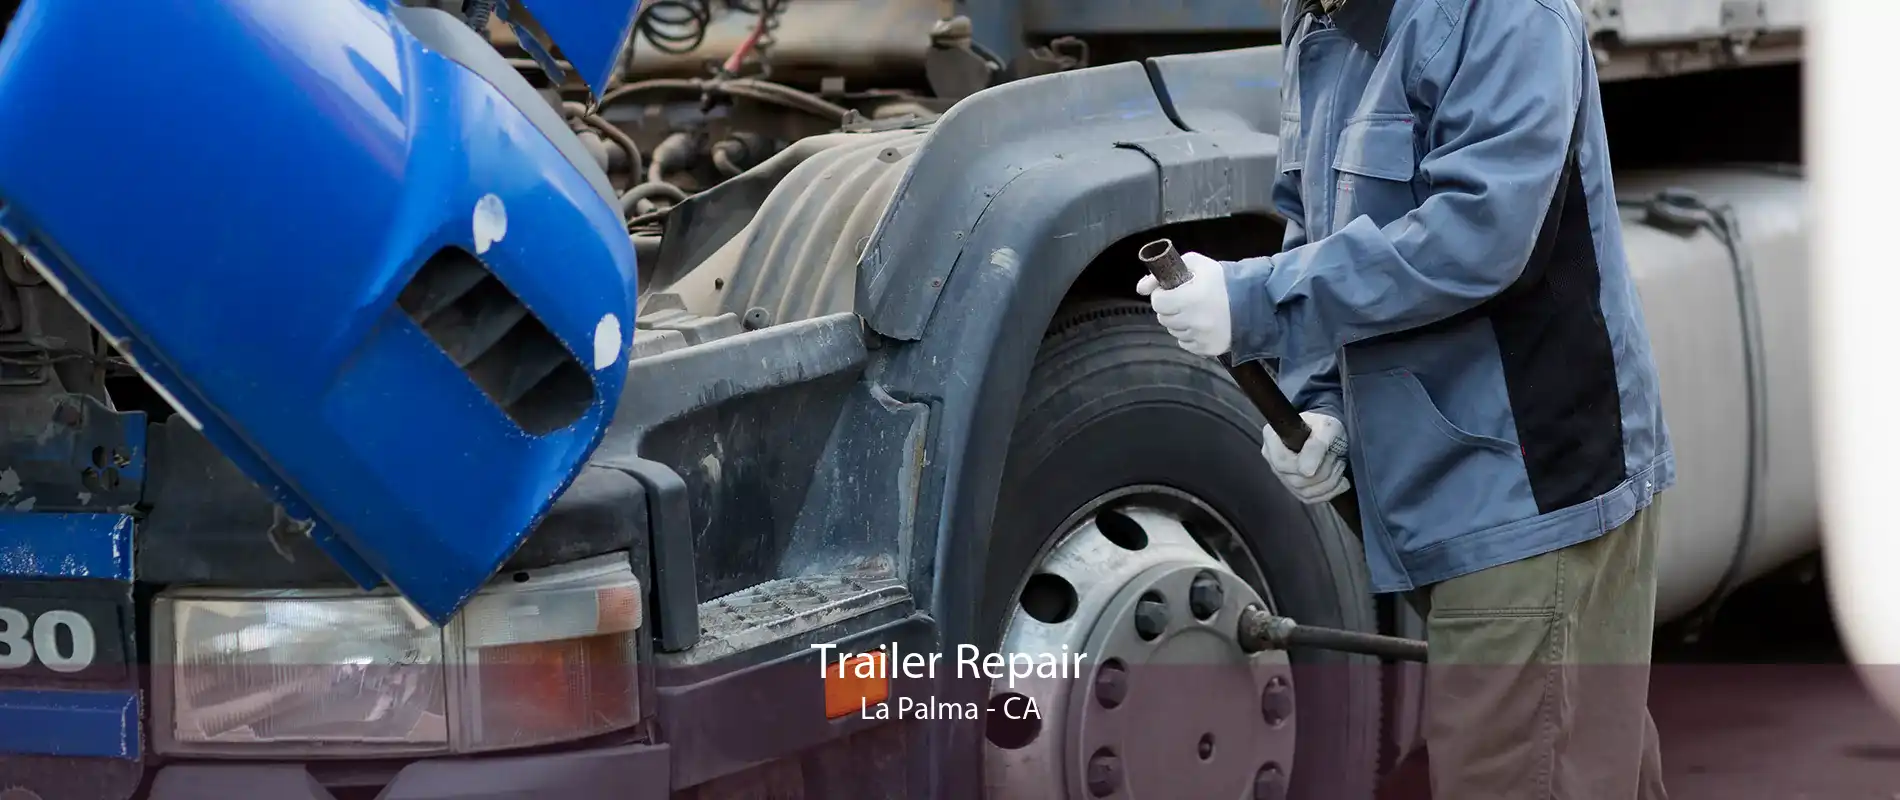 Trailer Repair La Palma - CA